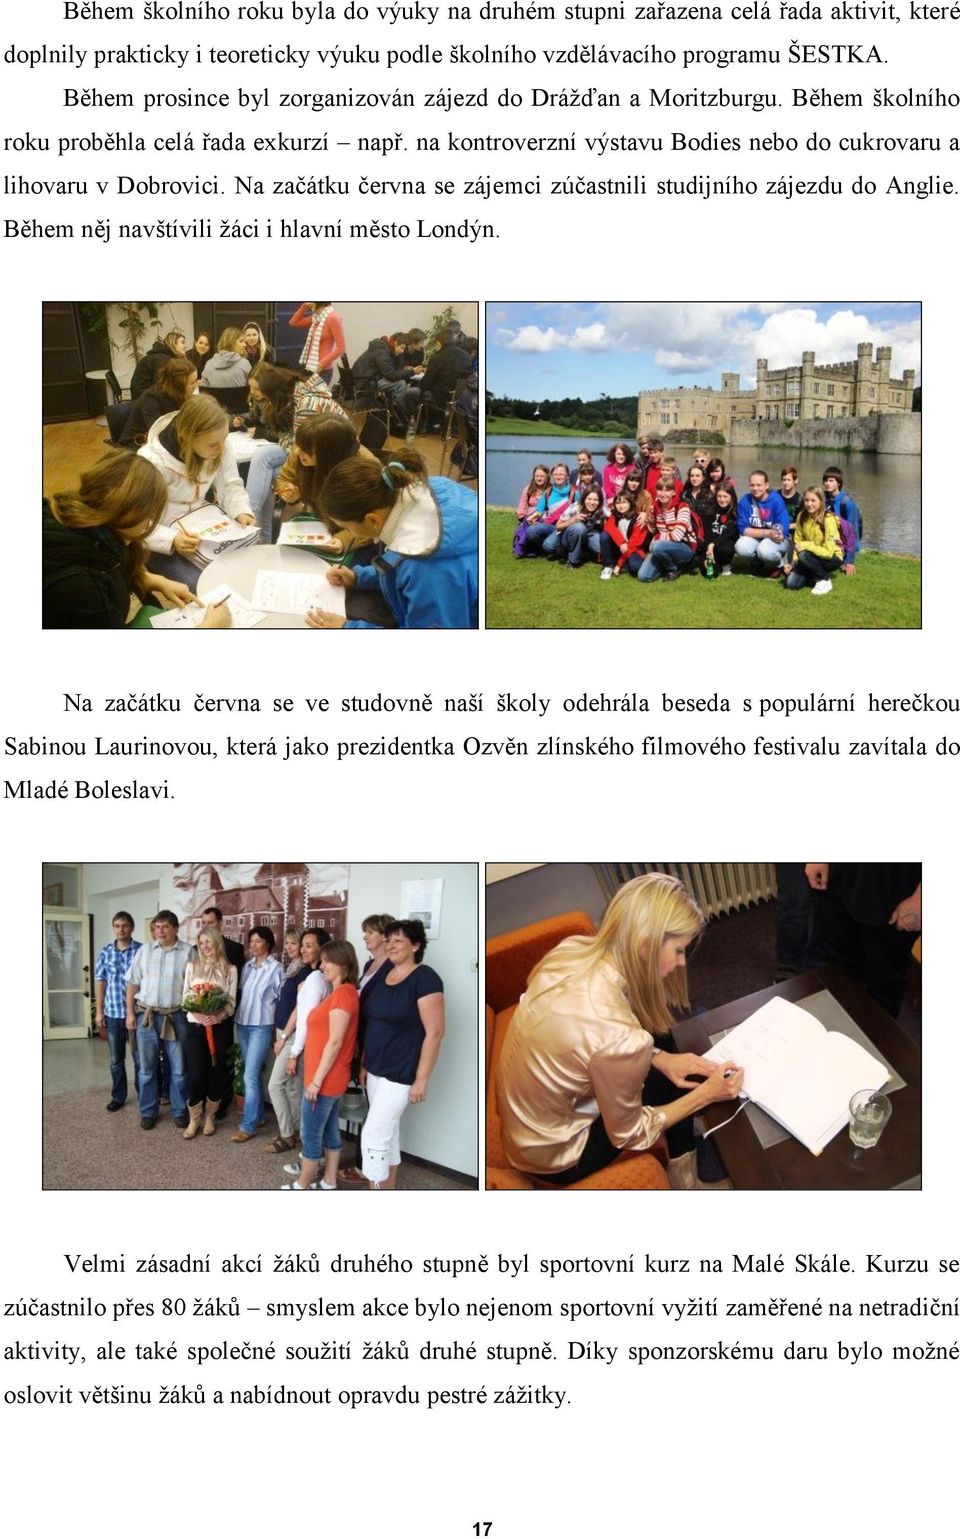 Na začátku června se zájemci zúčastnili studijního zájezdu do Anglie. Během něj navštívili žáci i hlavní město Londýn.